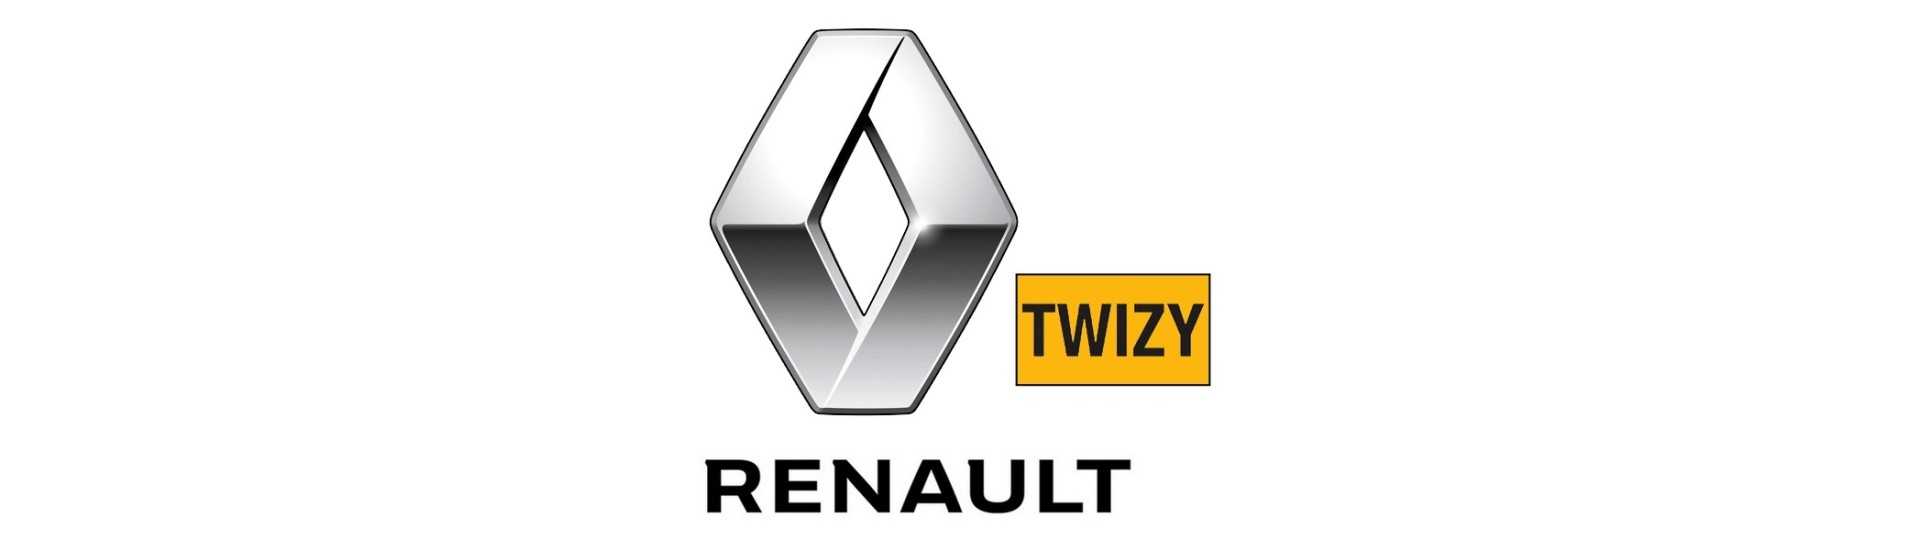 Suspensionsbrüche zum besten Preis Auto ohne Lizenz Renault Twizy